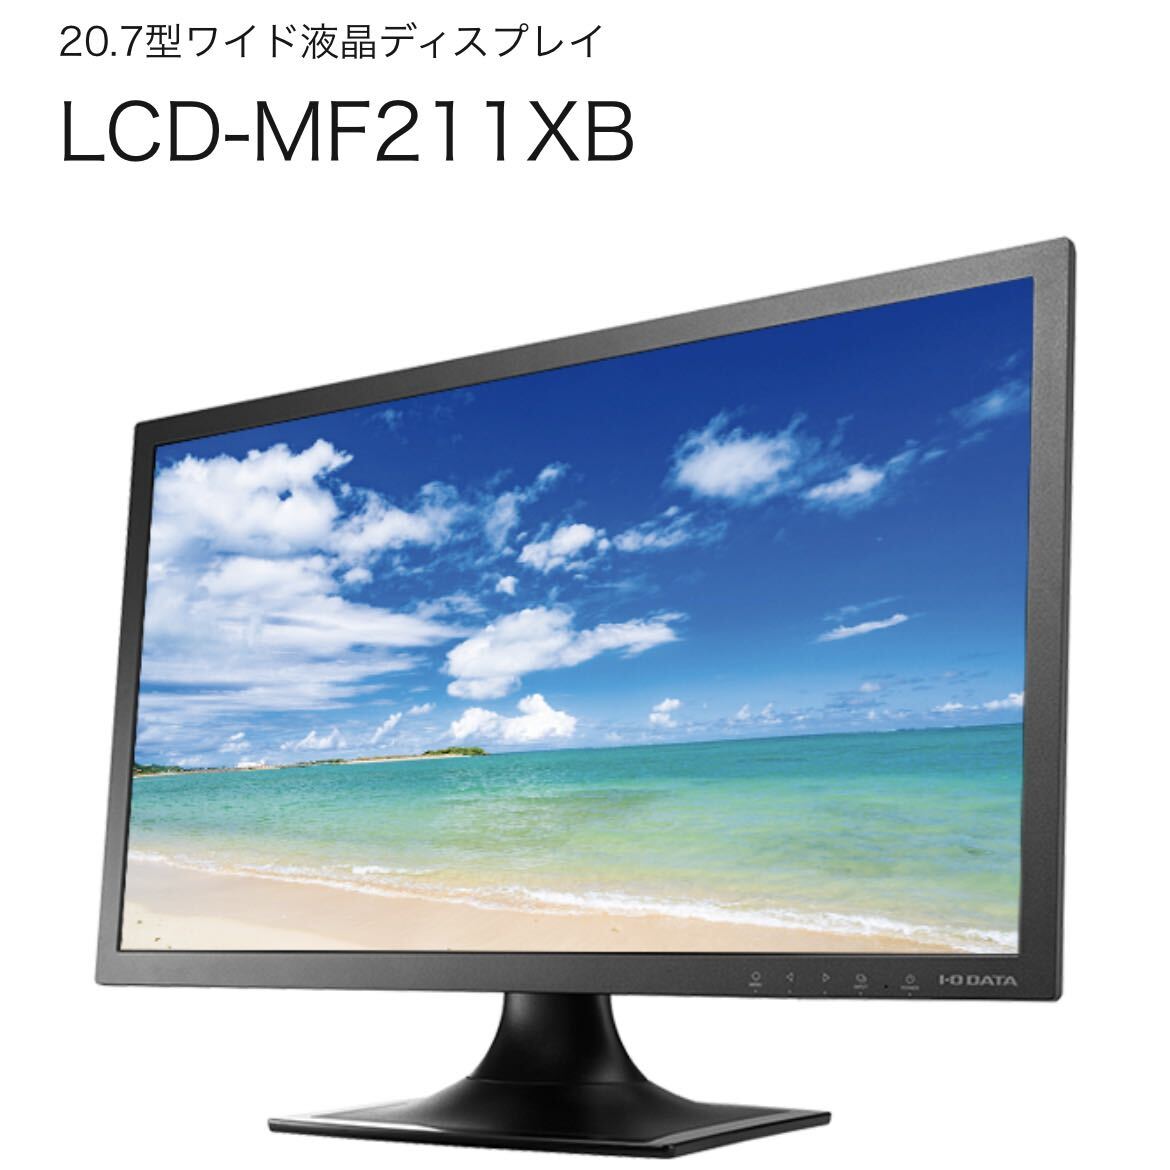 20.7型ワイド液晶ディスプレイ LCD-MF211XB ゲーム機やAV機器にもおすすめの画像1